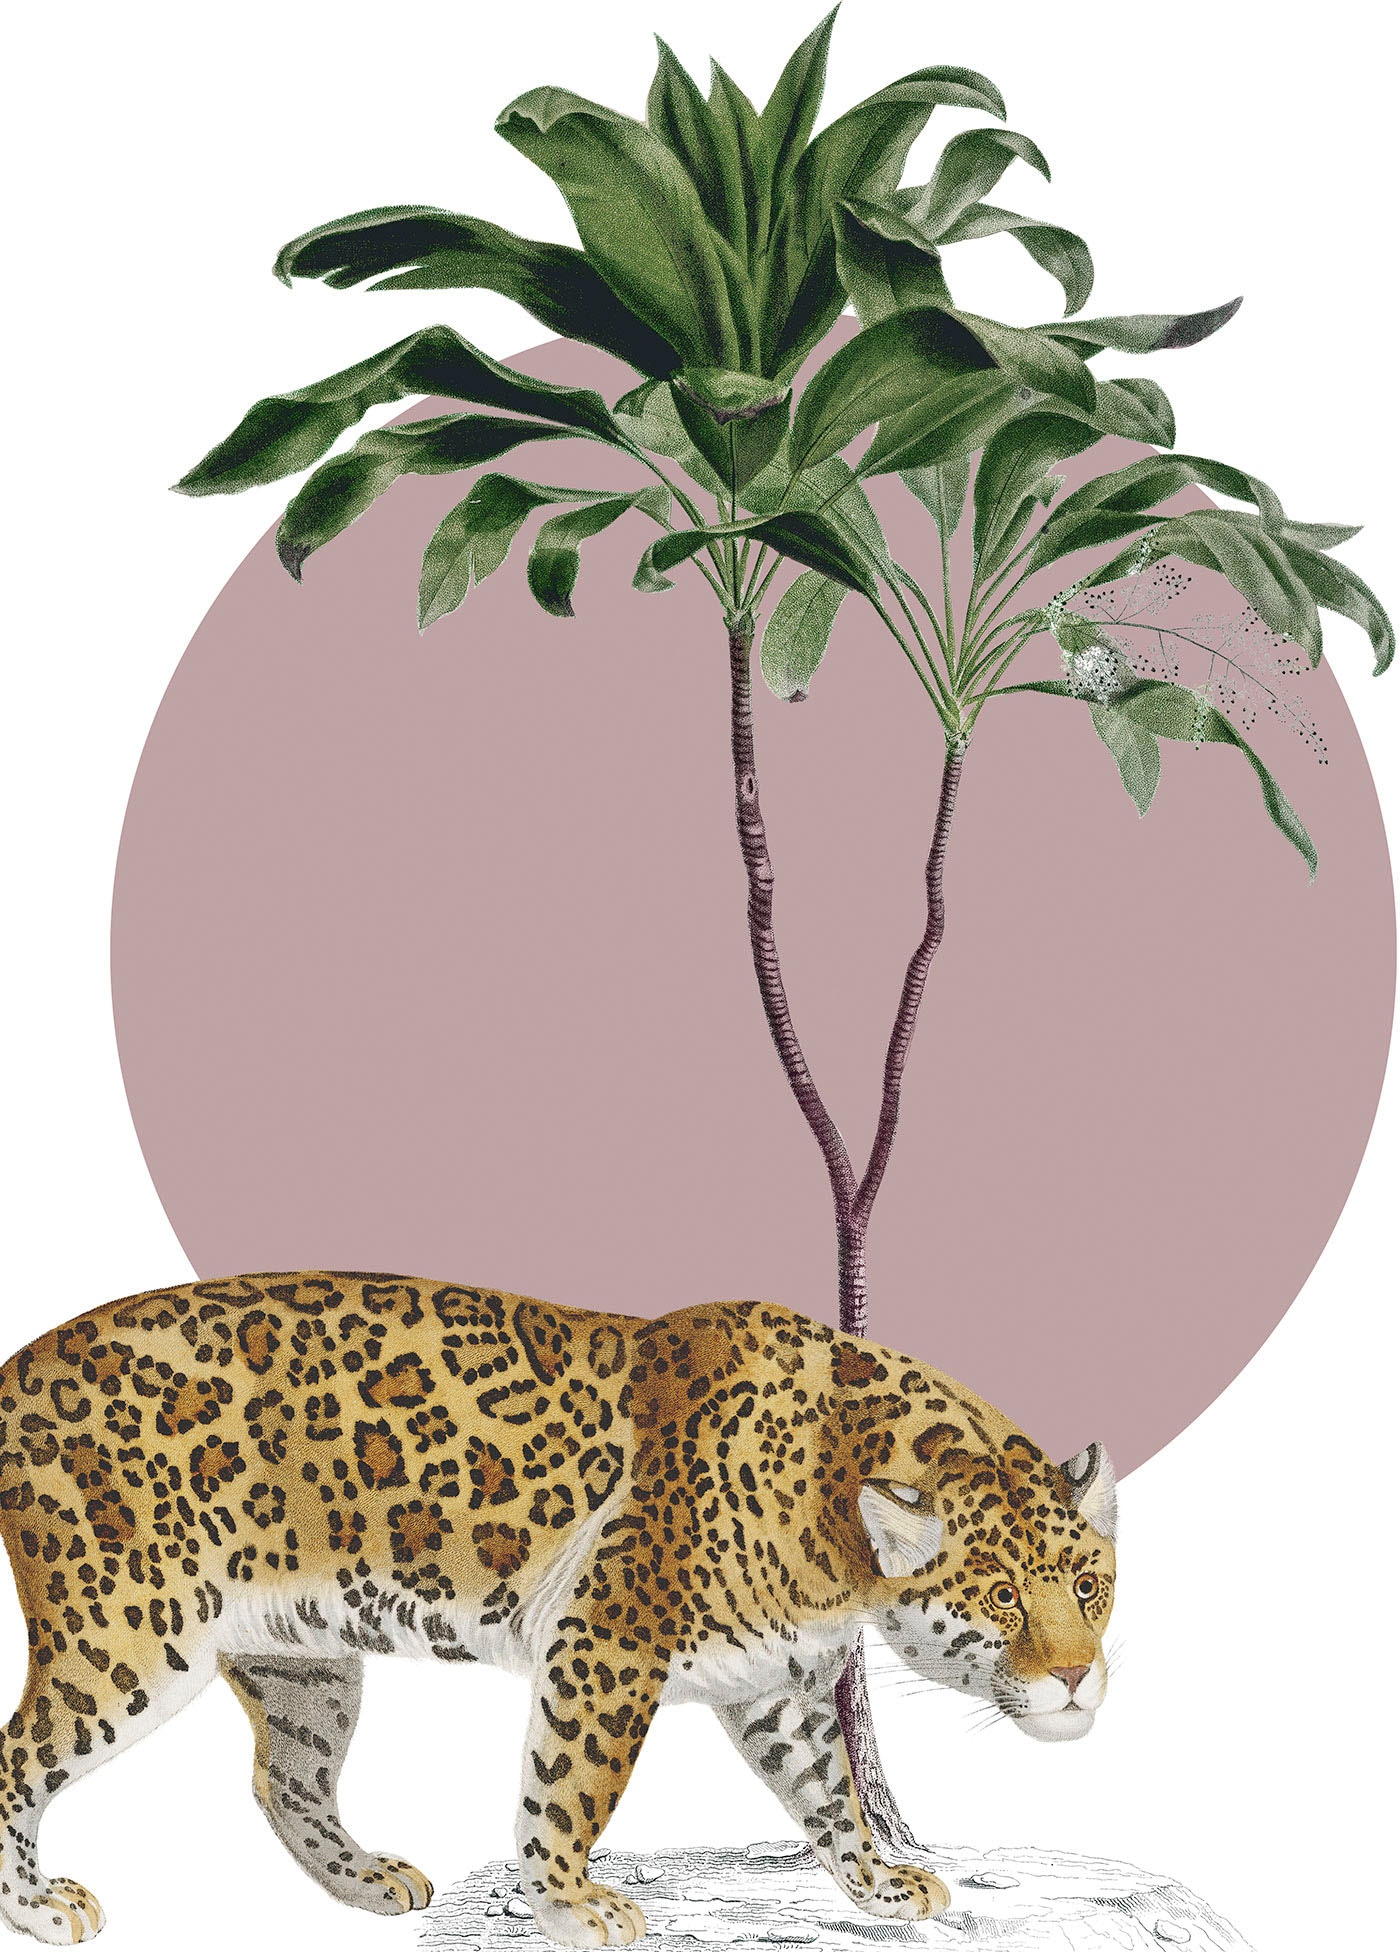 Komar Wandbild »Botanical Garden Jaguar«, (1 St.), Deutsches Premium-Poster Fotopapier mit seidenmatter Oberfläche und hoher Lichtbeständigkeit. Für fotorealistische Drucke mit gestochen scharfen Details und hervorragender Farbbrillanz.